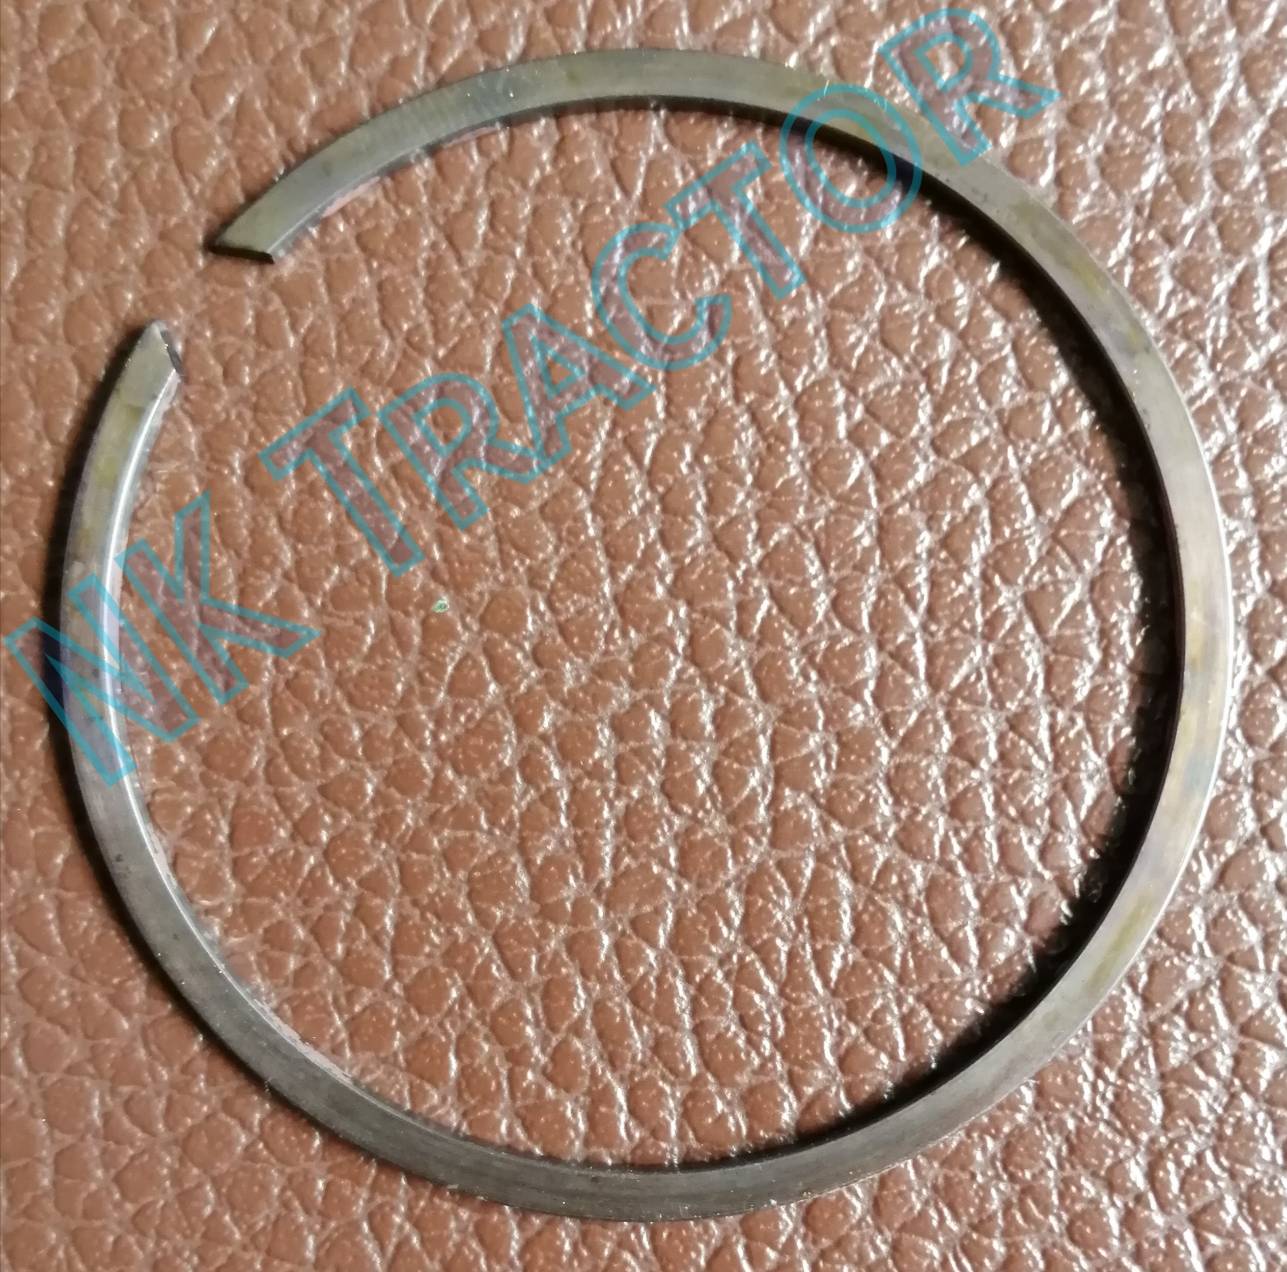 คูโบต้า แหวนล็อคเฟืองบายศรีเดือยหมู 50 มิล L3408 / L3608 / L4508 / L4708 / M5000 (Kubota) (แหวนล็อค แหวนล๊อค ปริ้น คลิป ล็อค ล๊อค คลิบ เฟืองบายศรี เดือยหมู)